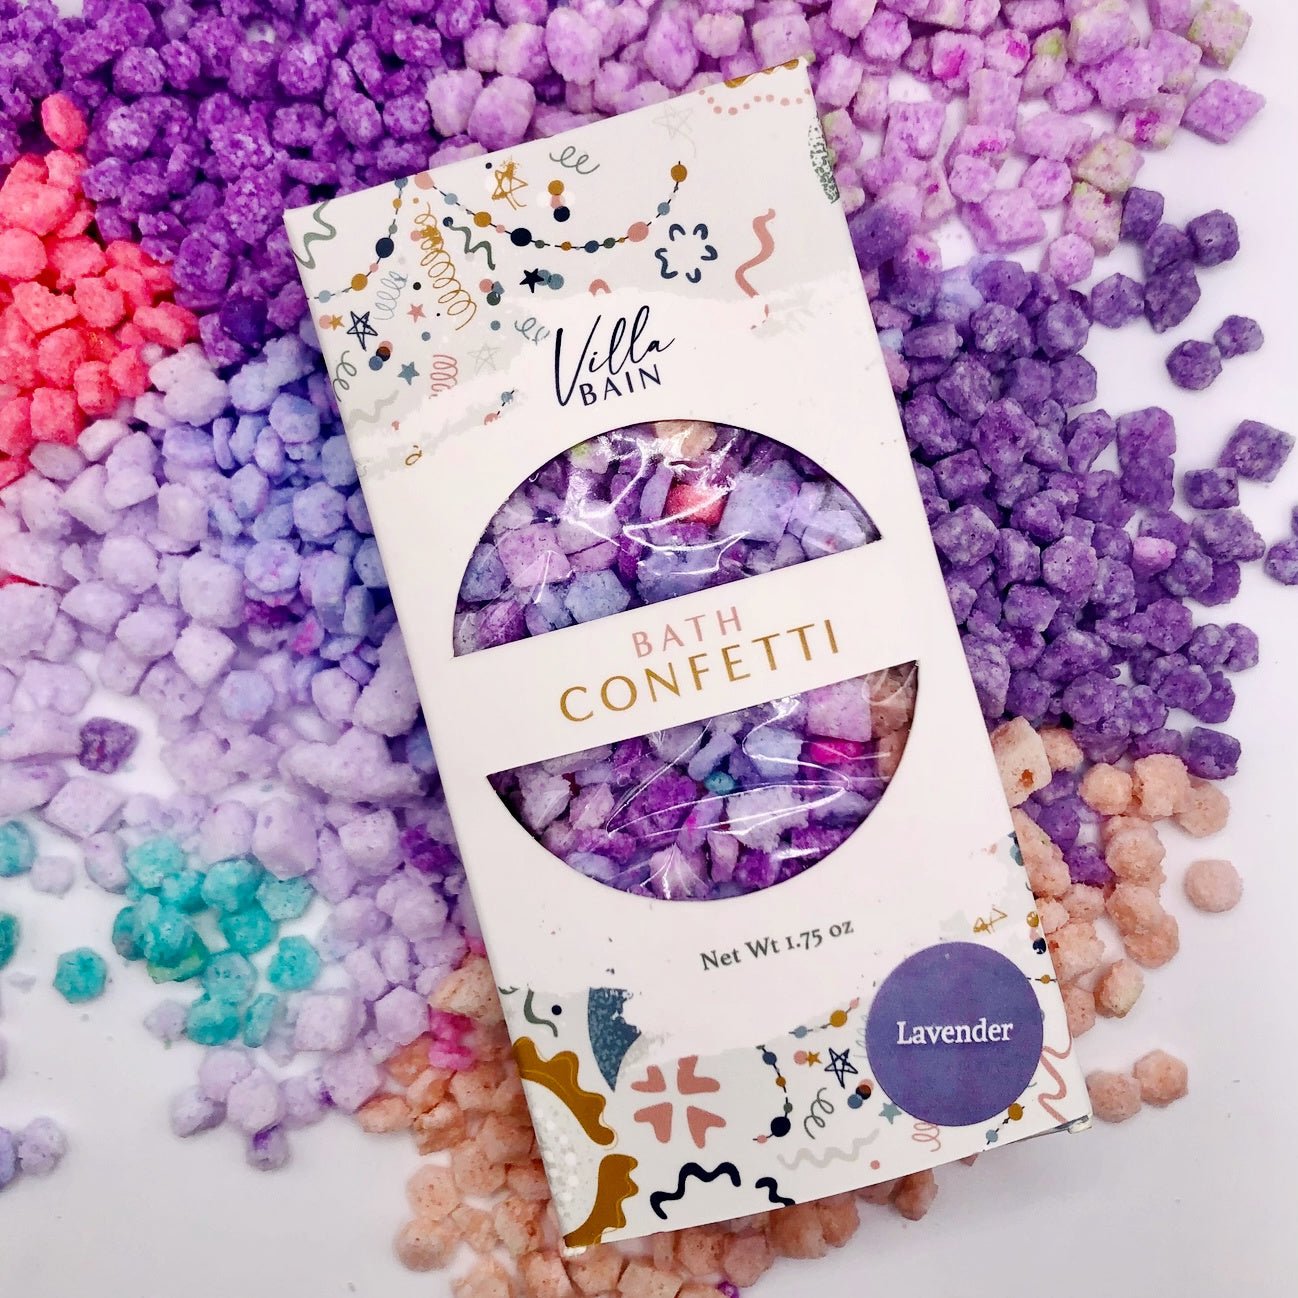 Lavender Bath Confetti by Villa Bain - Petite Belle